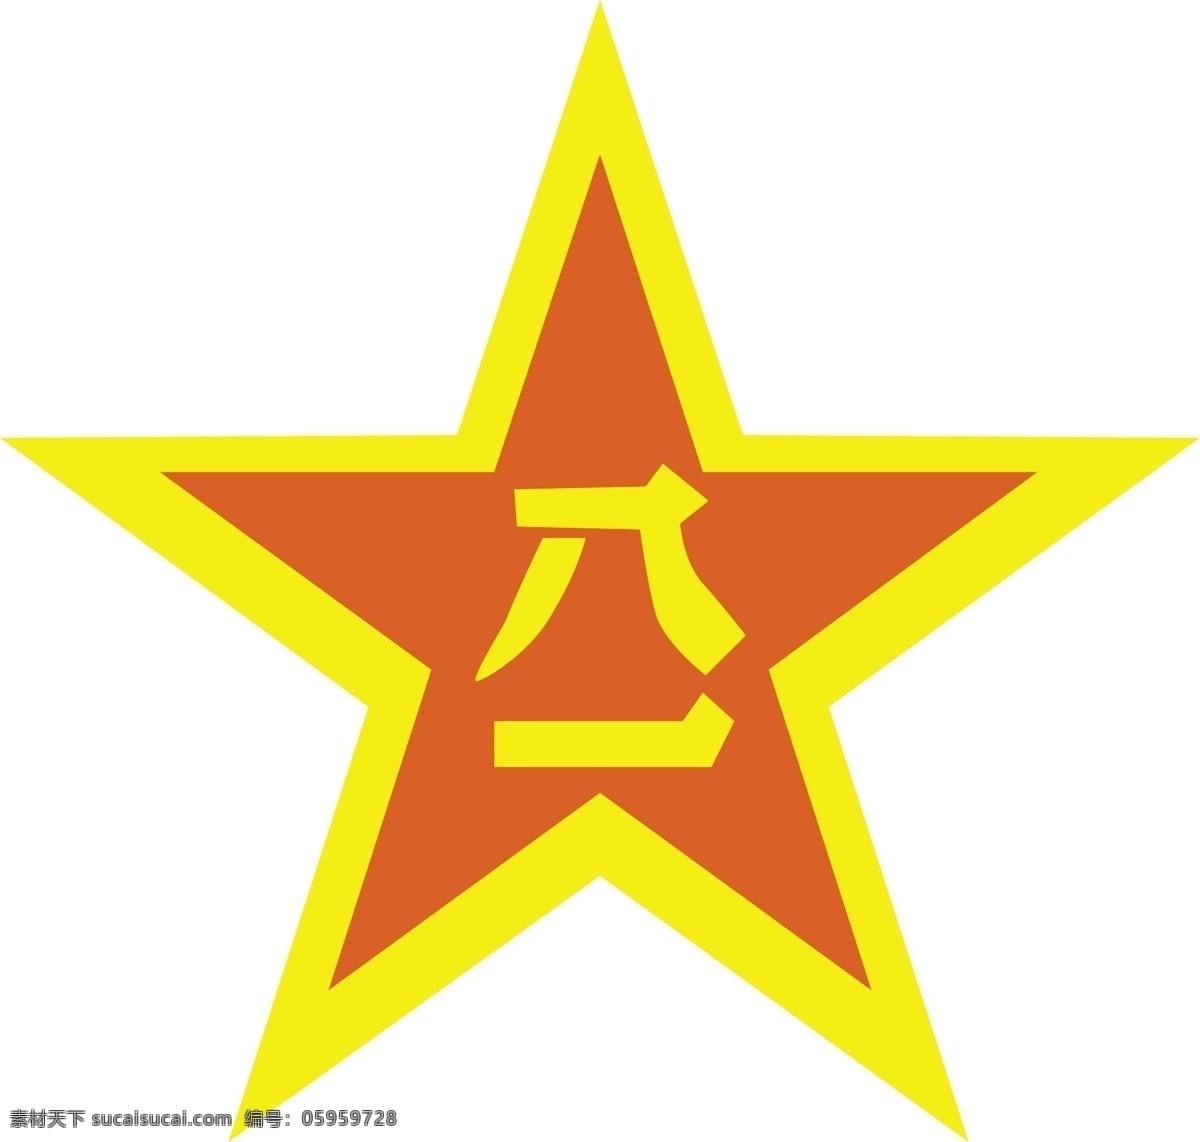 八一军徽 其他矢量 矢量素材 矢量图库 中国人民解放军 八 军徽 矢量 模板下载 2008 年 日历 其他矢量图